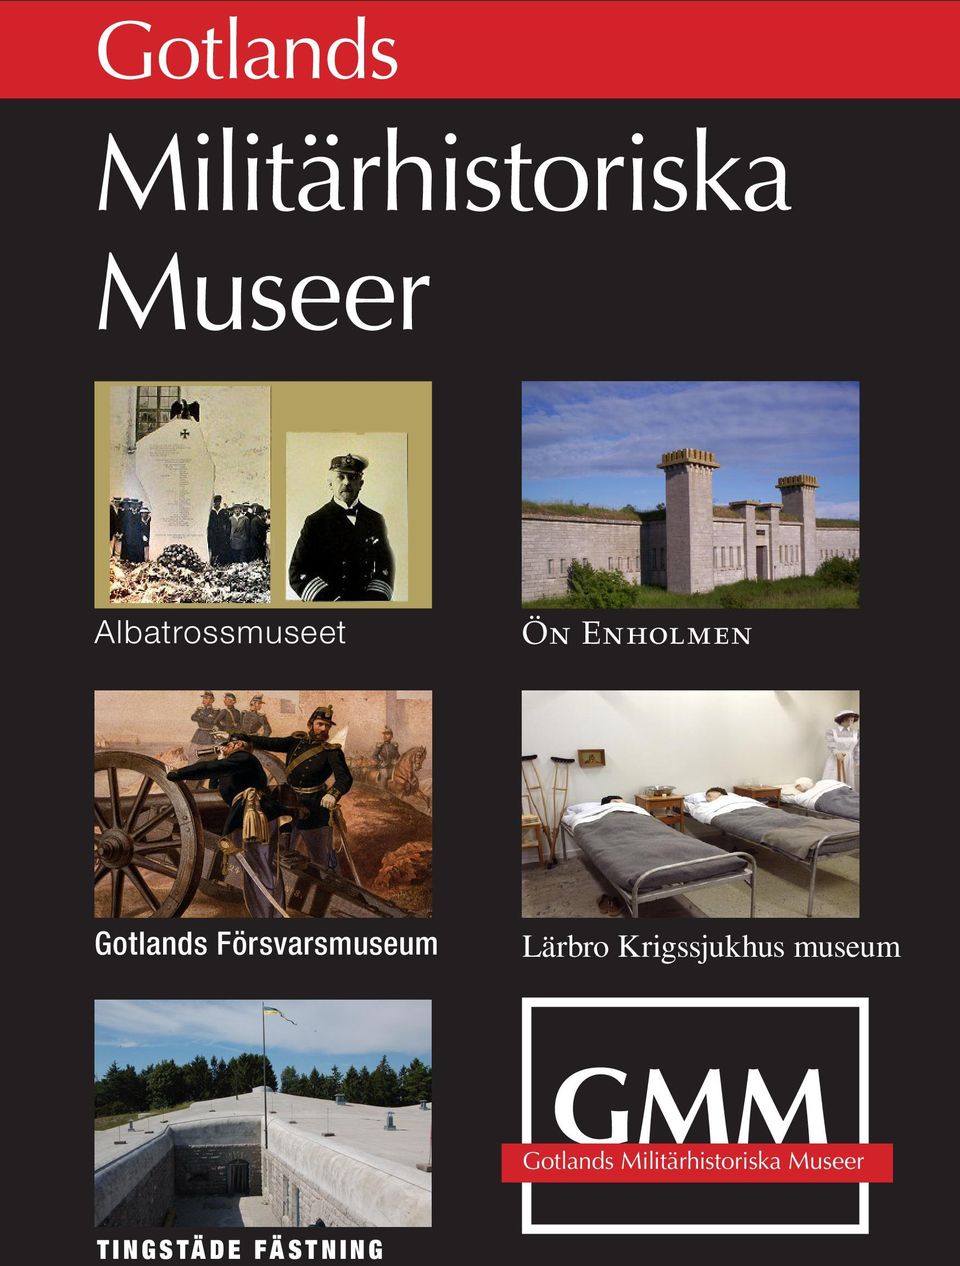 Försvarsmuseum Lärbro Krigssjukhus museum GMM